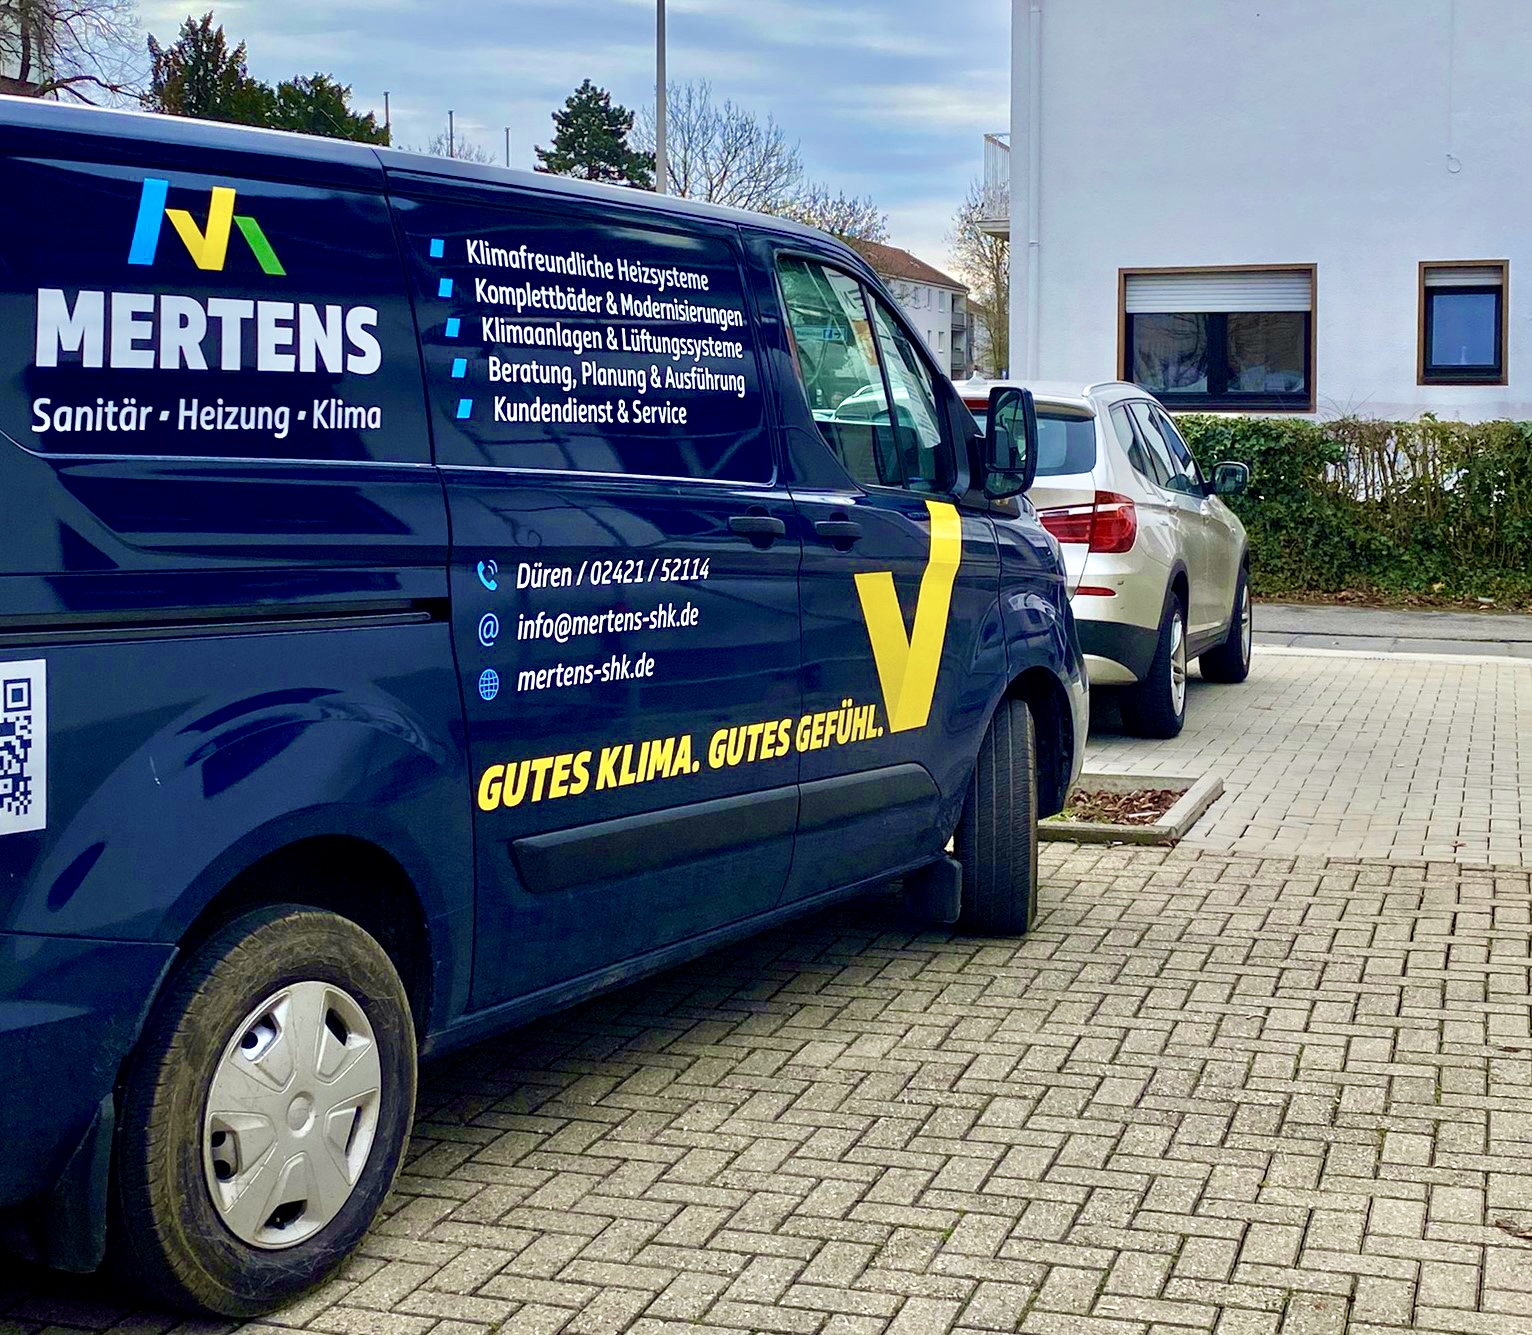 Mertens_shk_Dueren_Firmenwagen